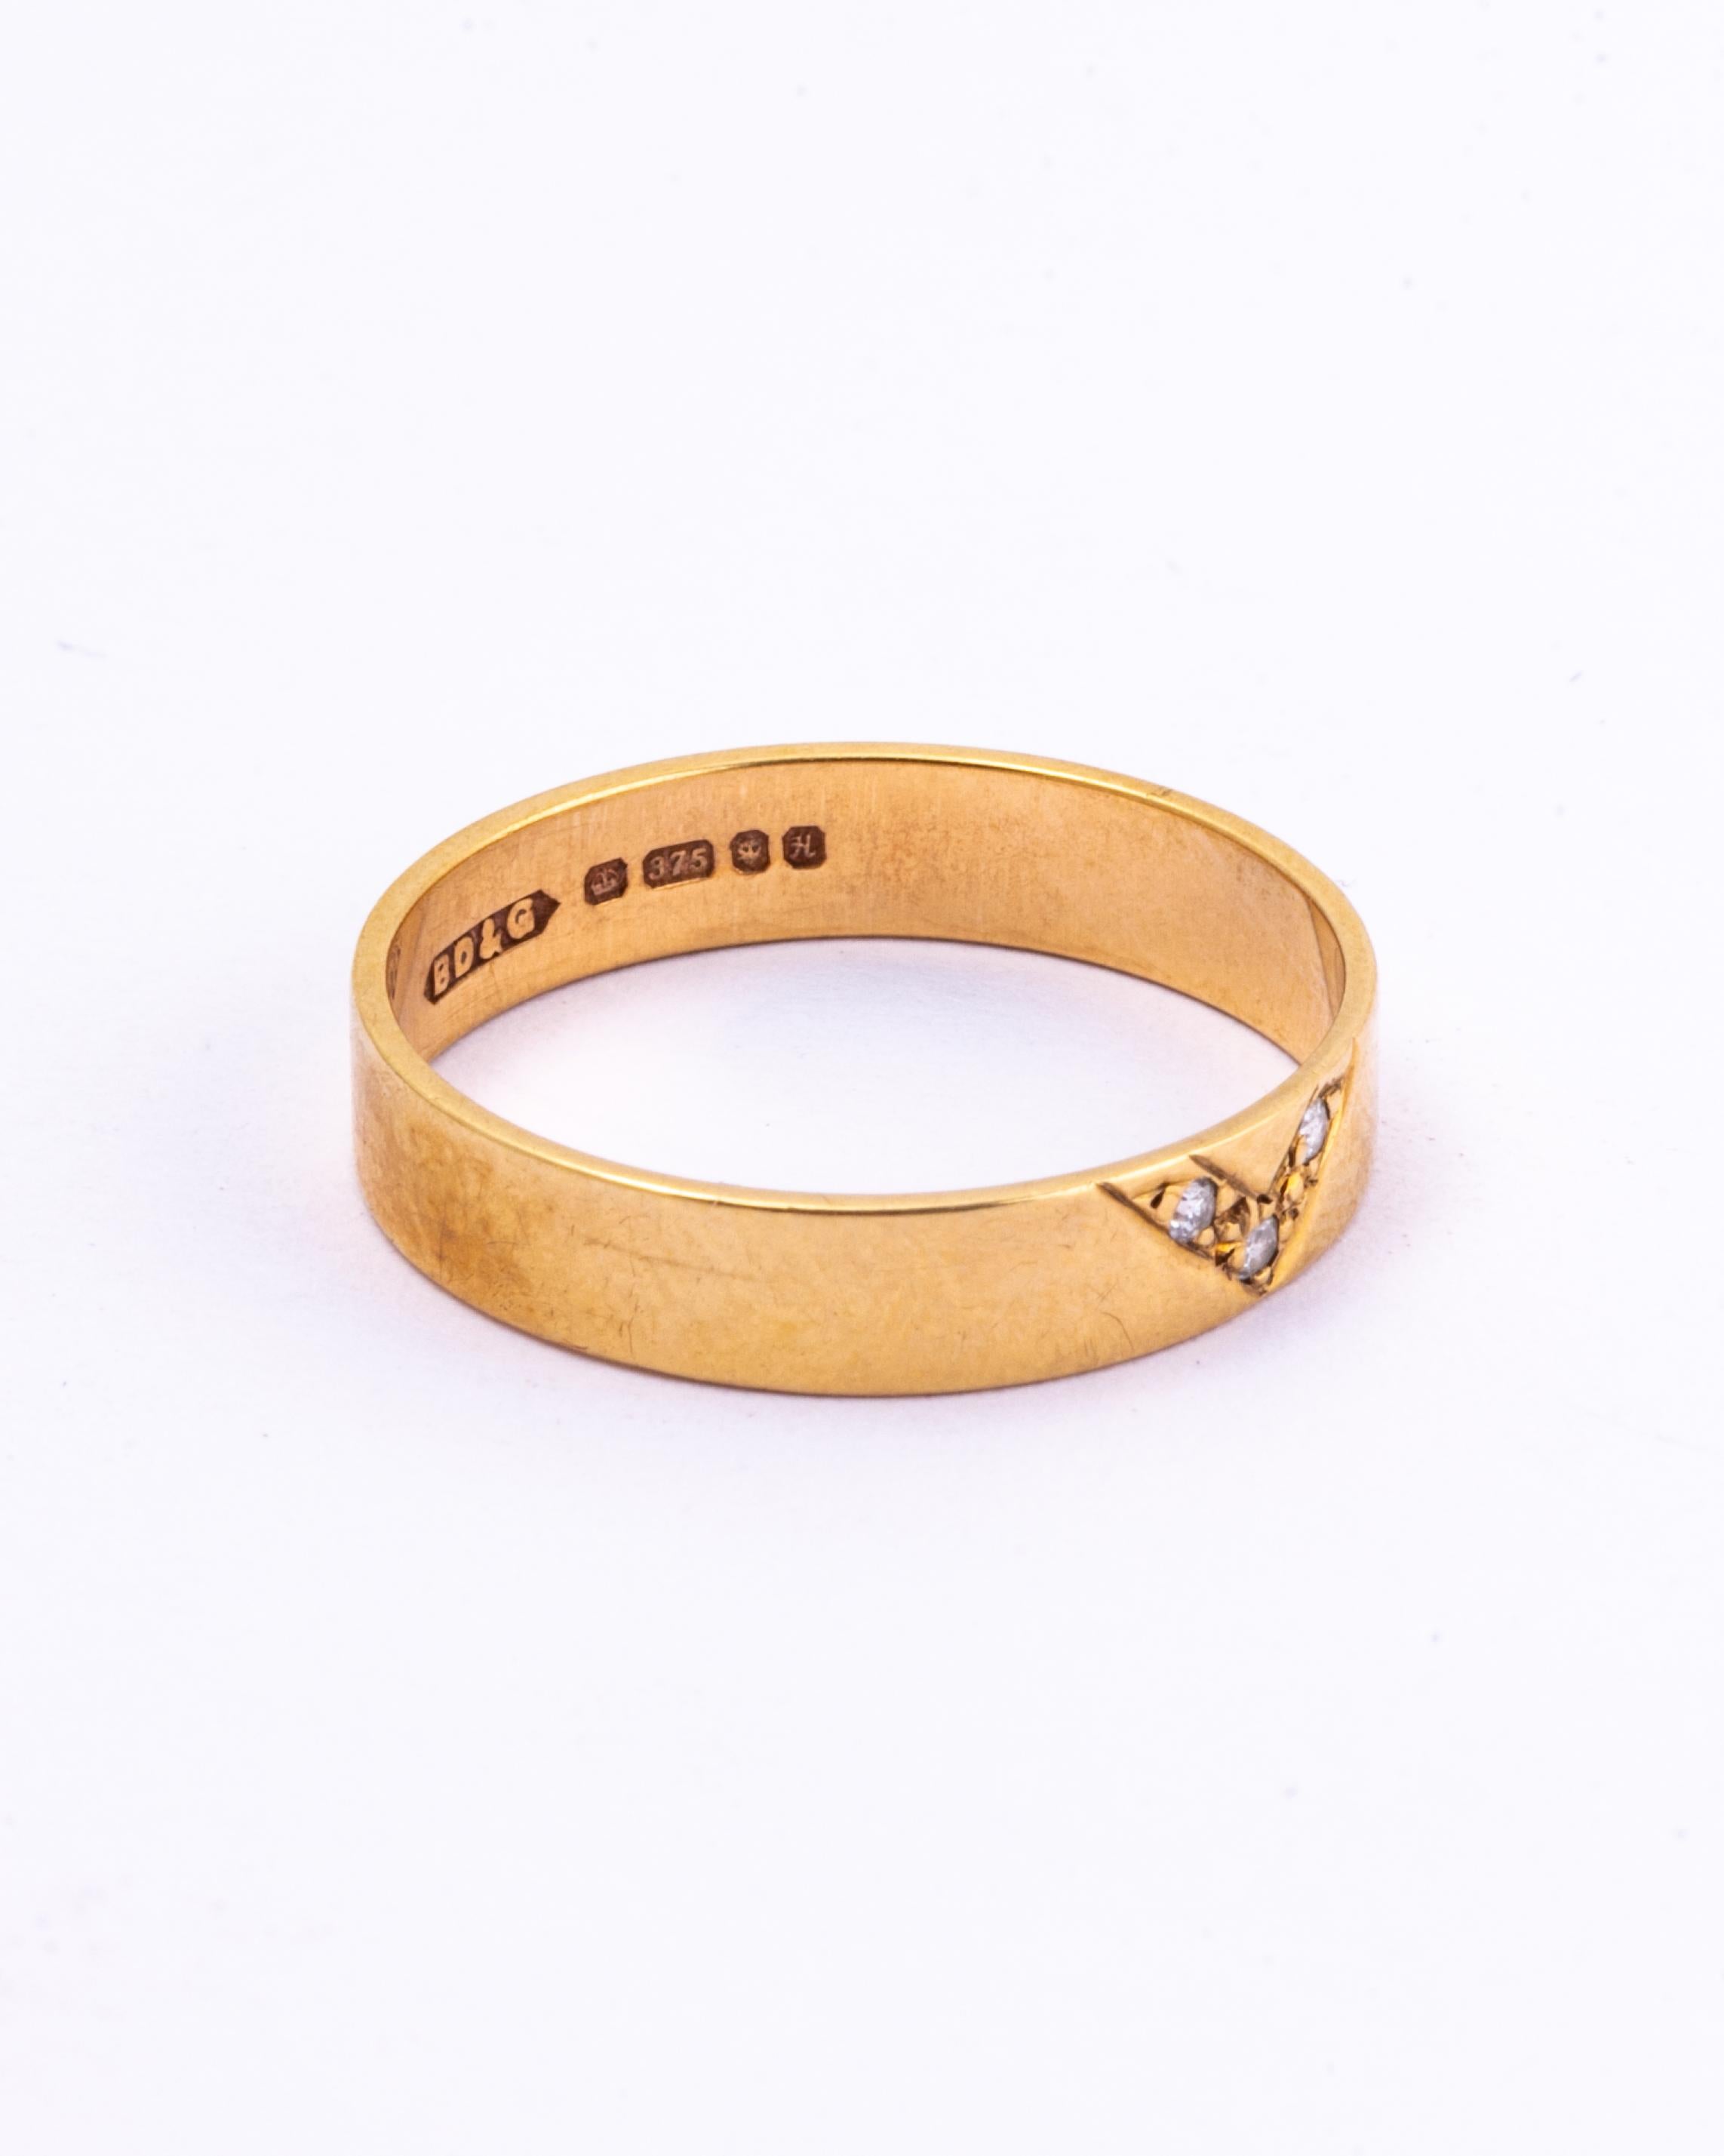 Cet anneau classique est fabriqué en or 9 carats et présente une forme en 